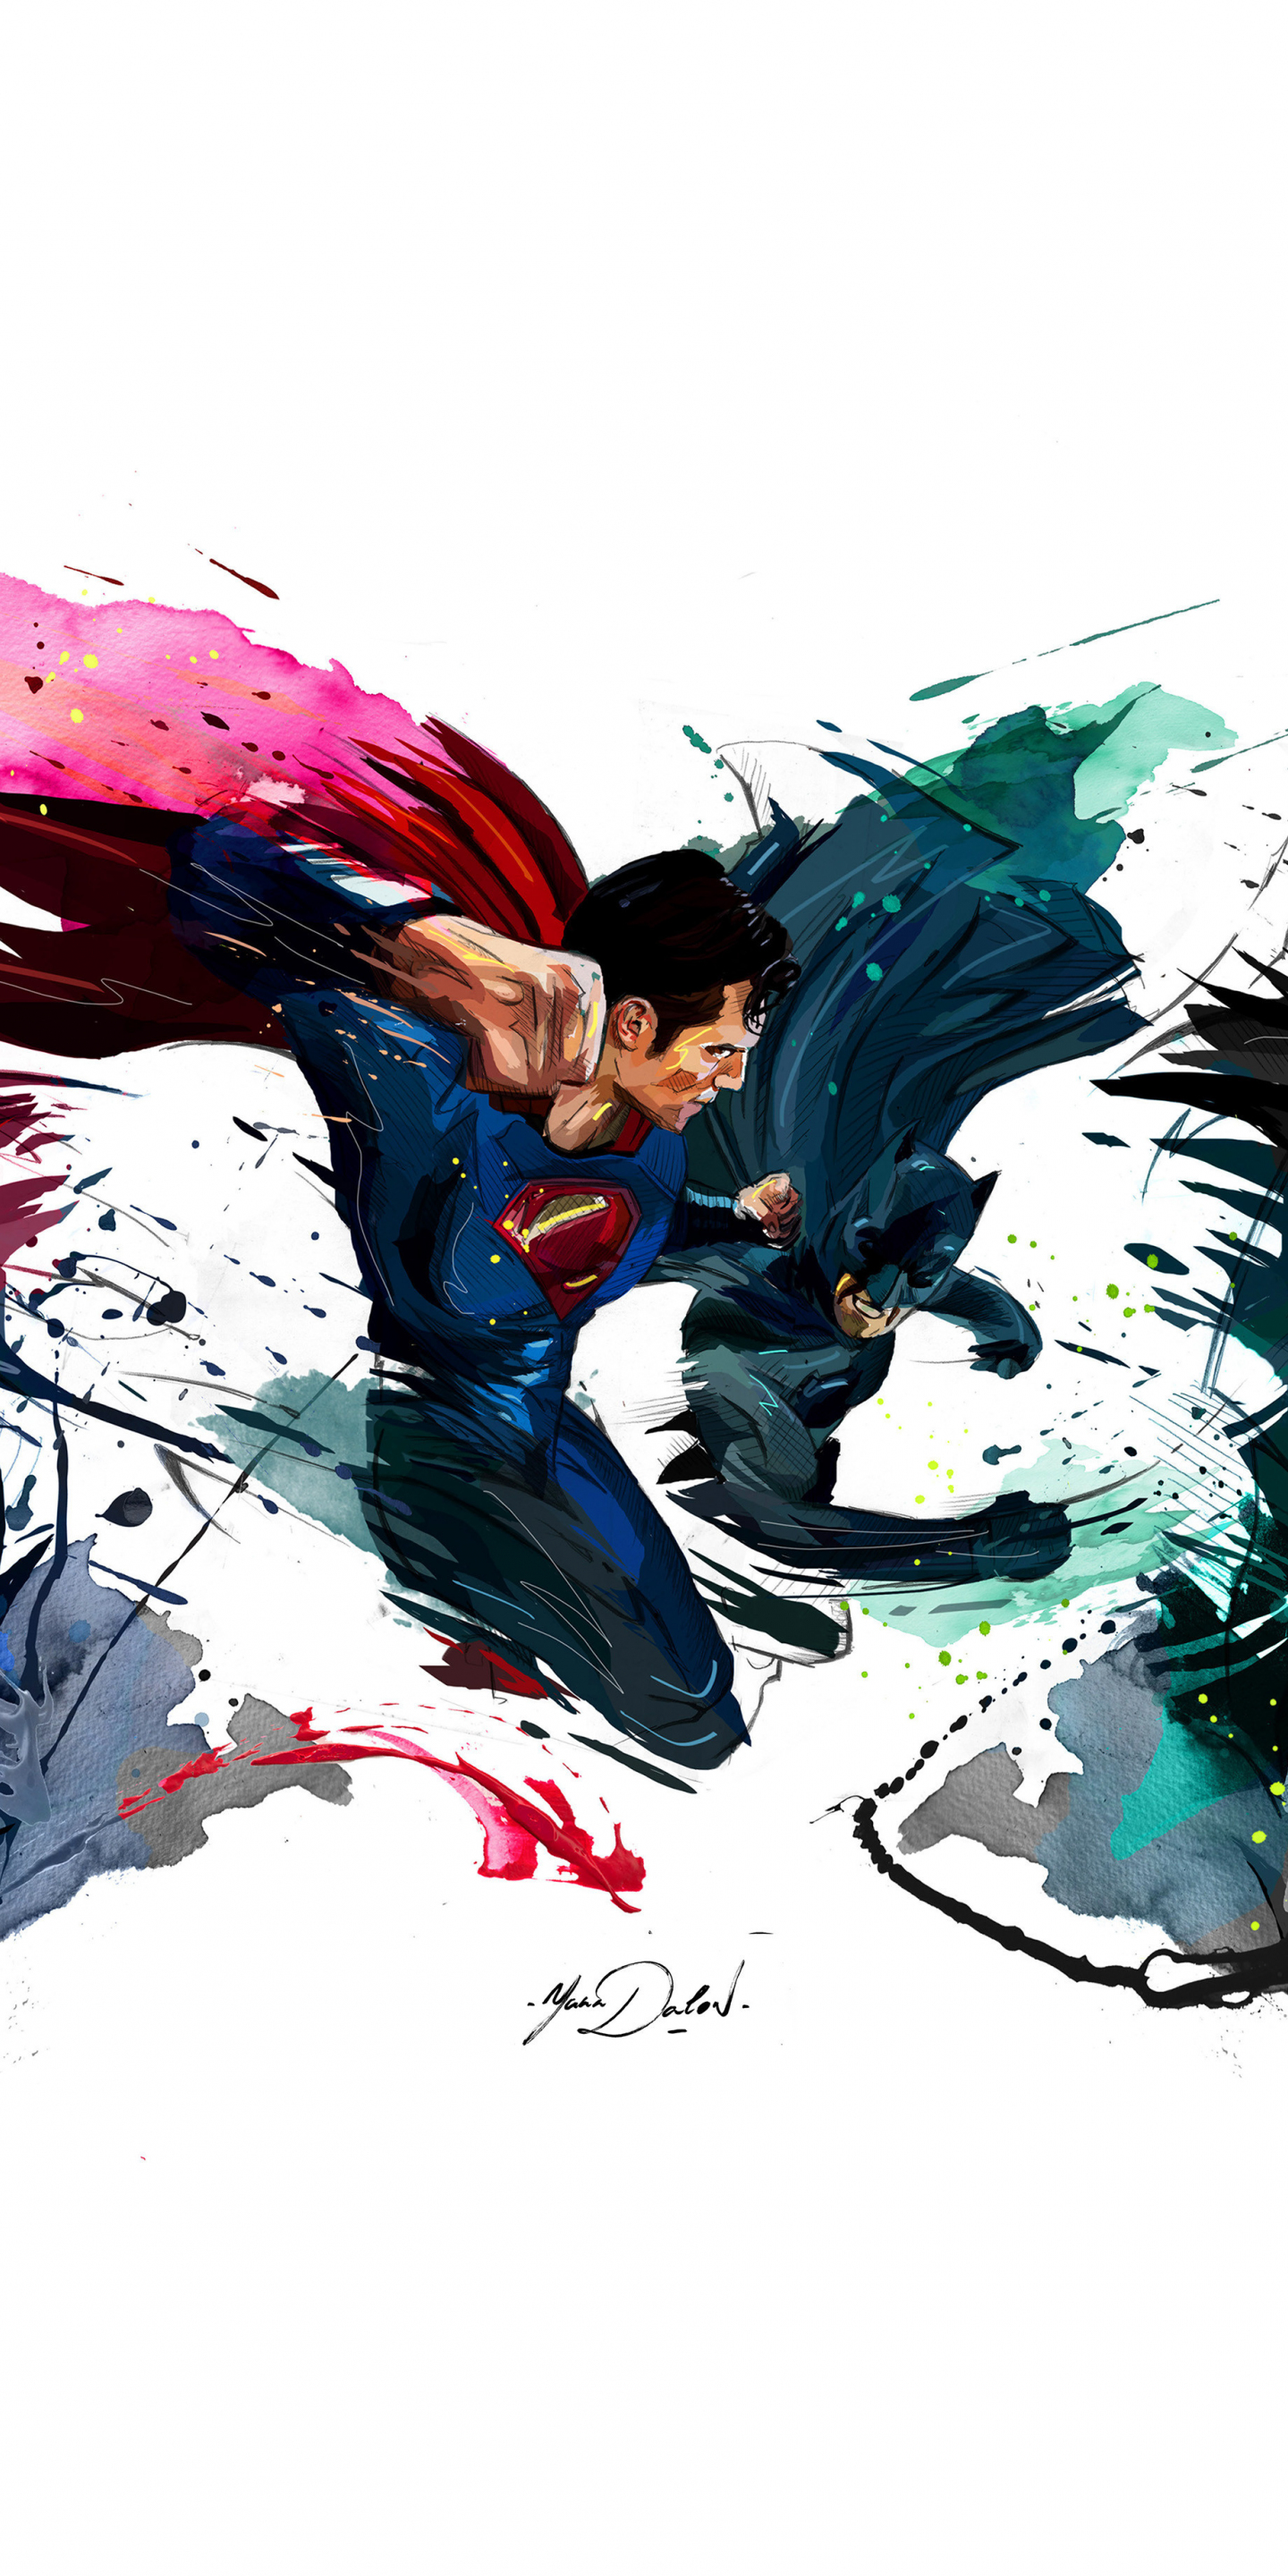 Batman vs superman, 4k, sketch artwork, 1440x2880 wallpaper